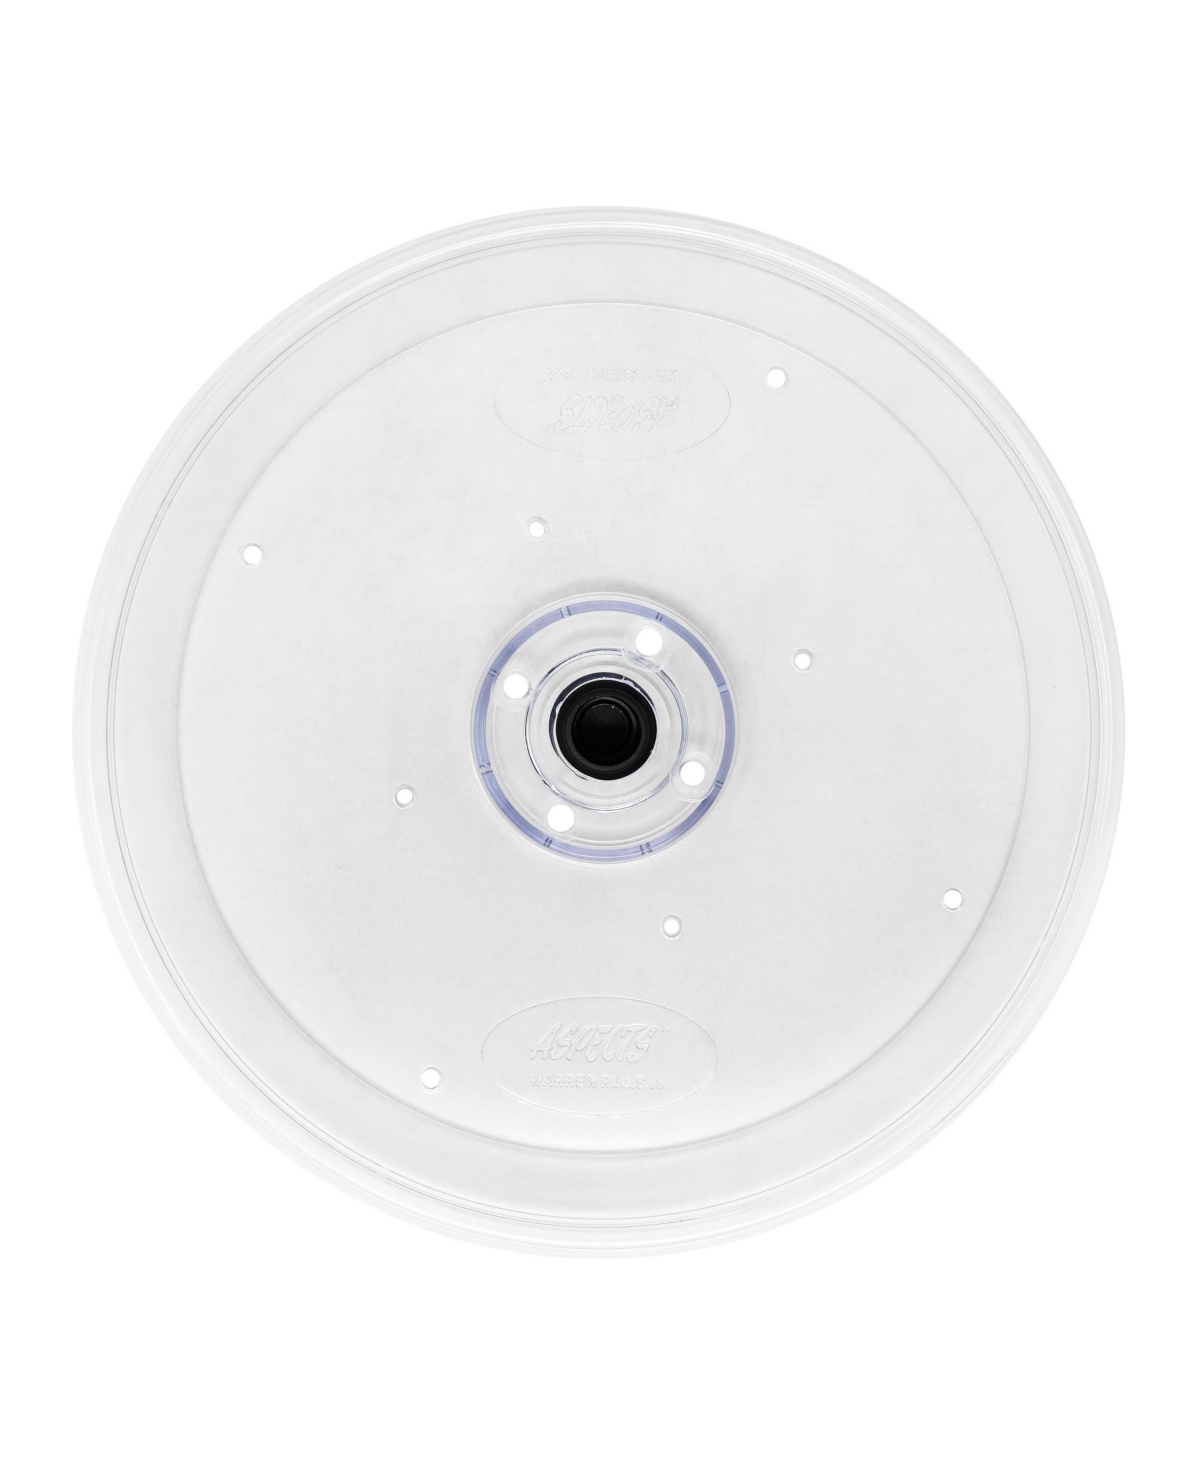 (ASP050) Round Seed Tray, 8.5 diameter - Multi